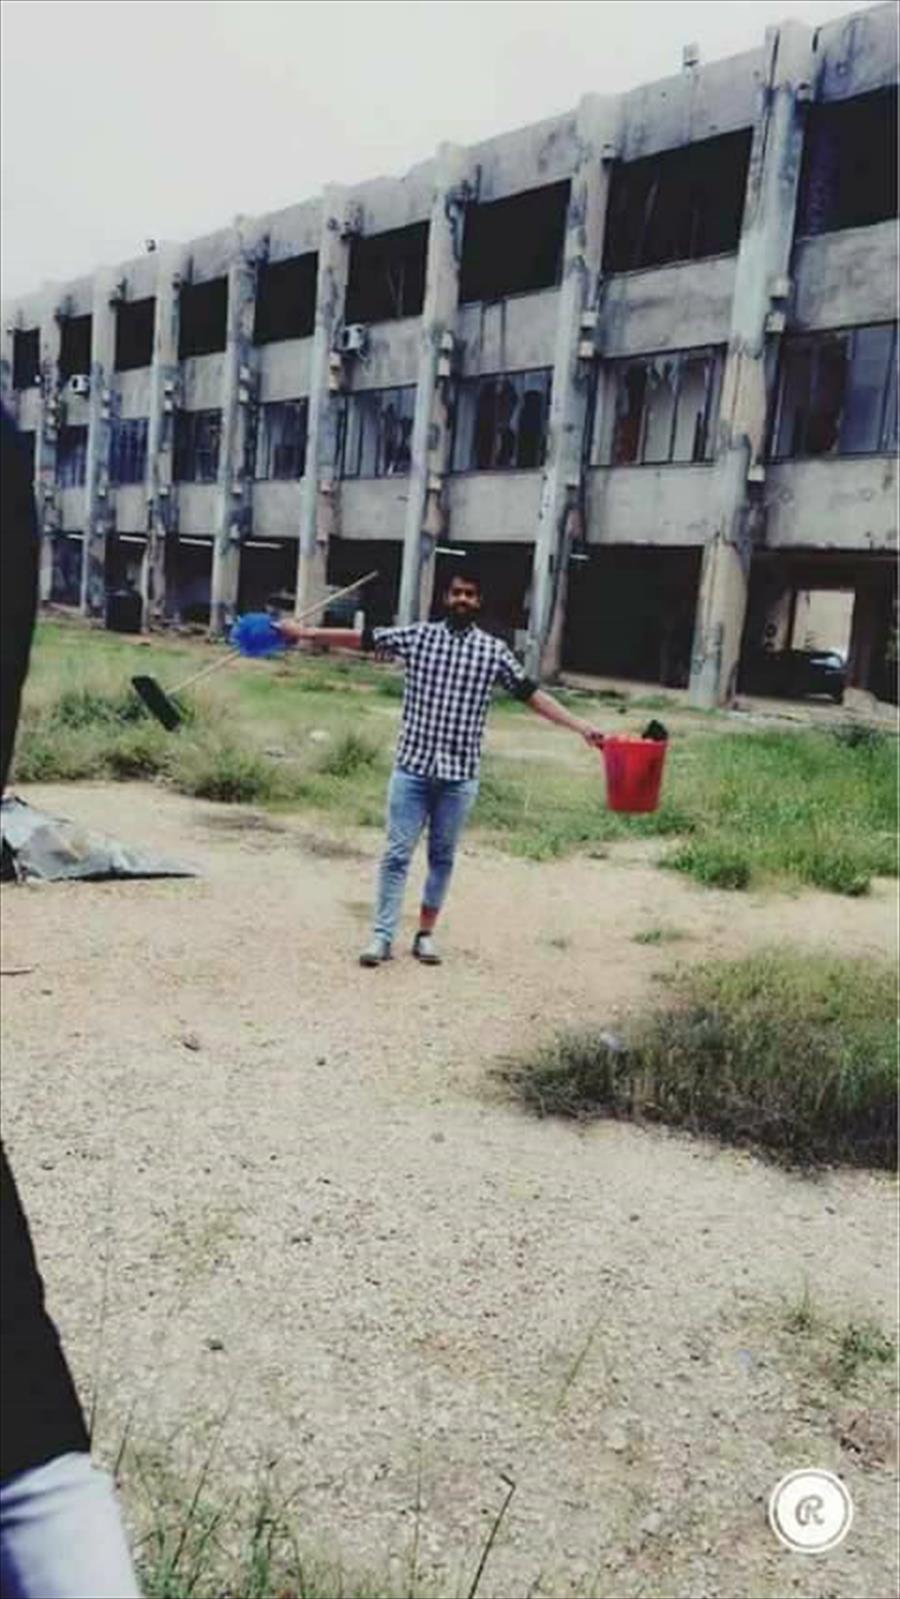 بالصور: طلاب كلية القانون بجامعة بنغازي ينظفون كليتهم ويستأنفون الدراسة